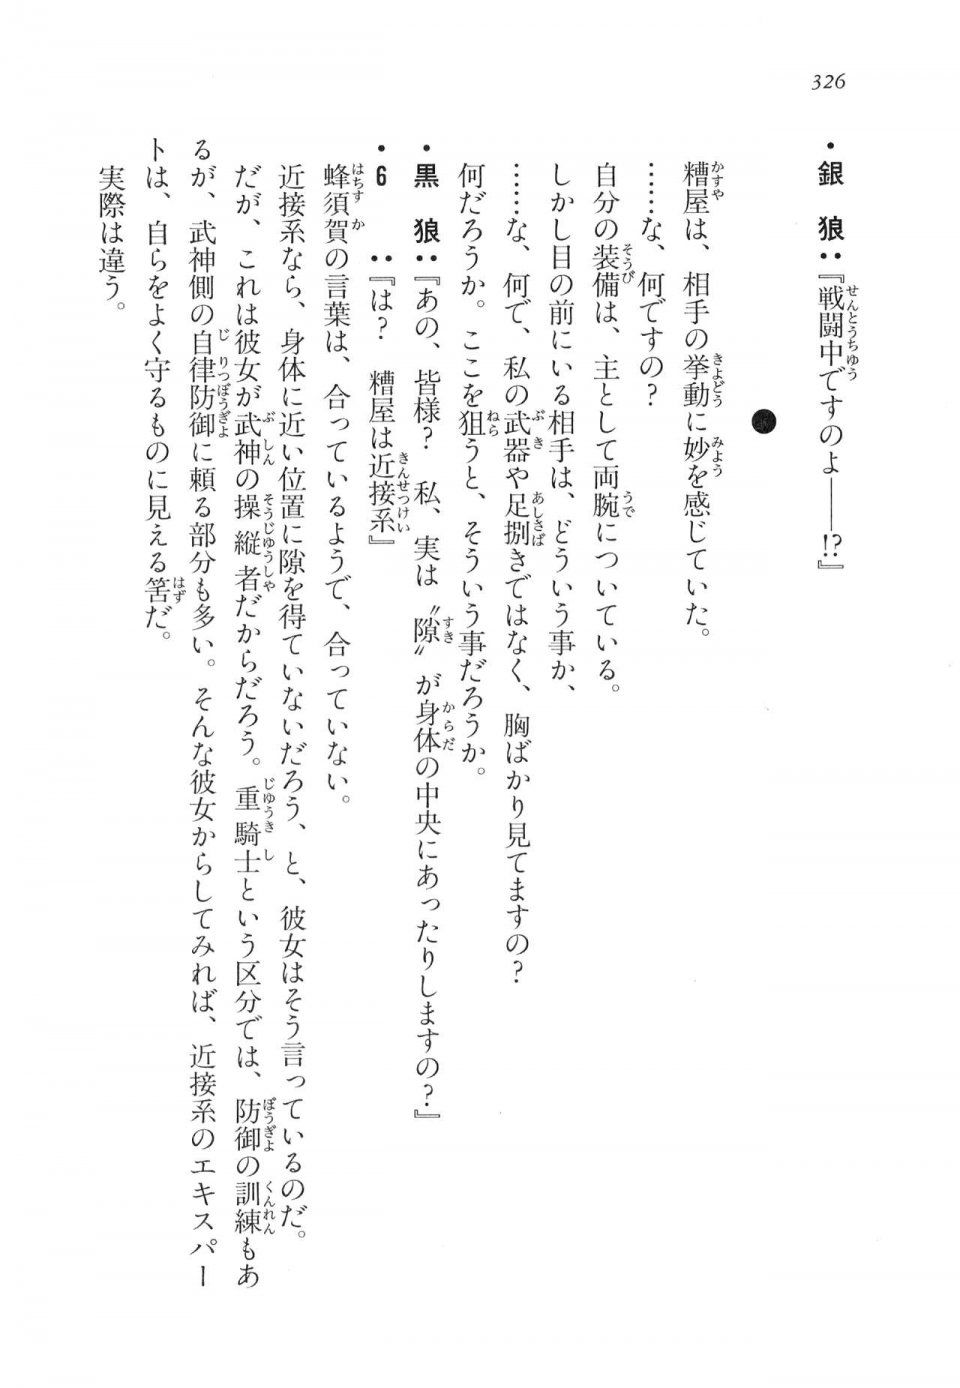 Kyoukai Senjou no Horizon LN Vol 17(7B) - Photo #326